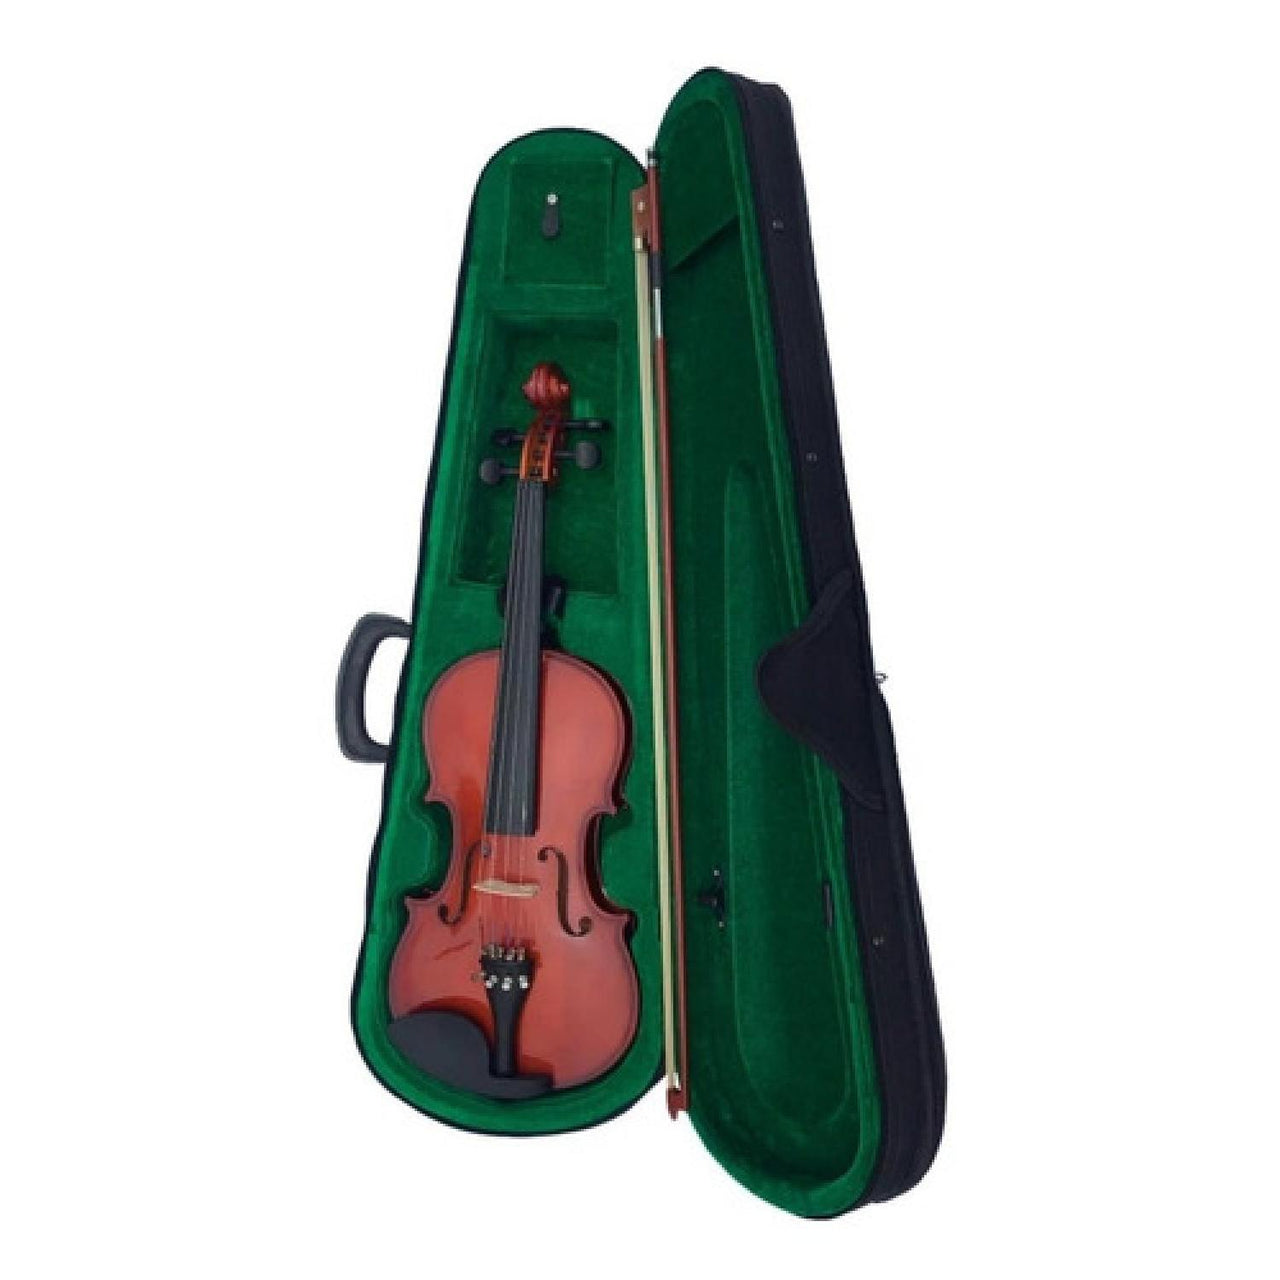 Violin Amadeus Cellini Estudiante 4/4 Laminado Brillante, Amvl001